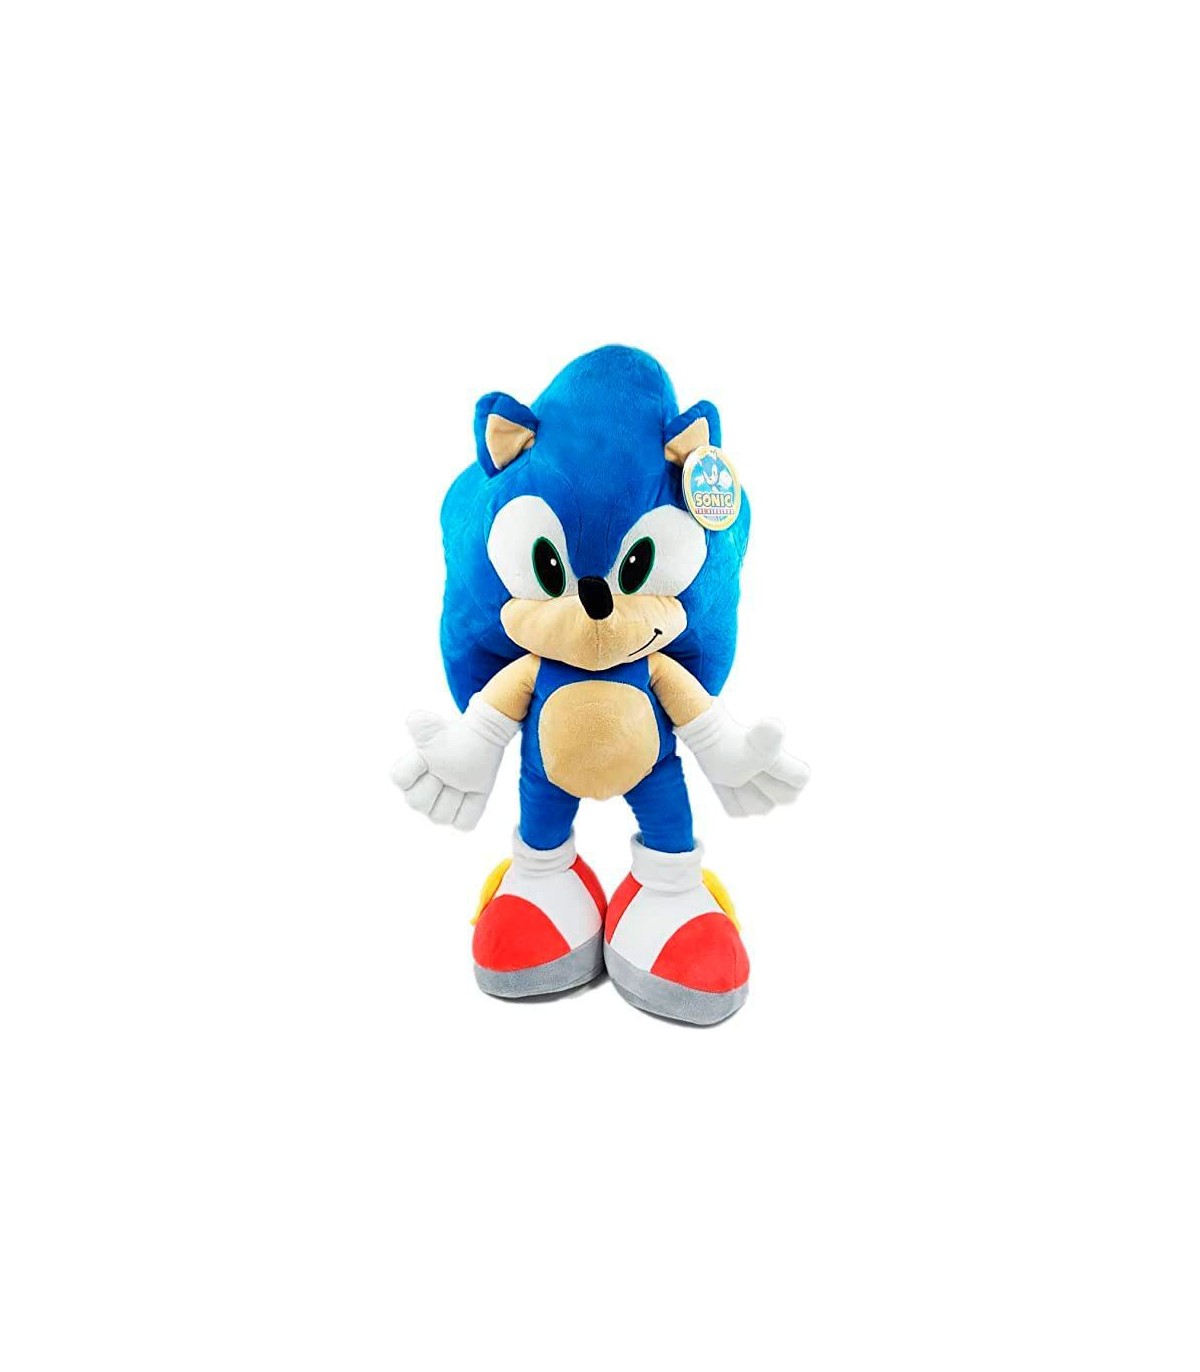 Nuevo Peluche Sonic 2 en tamaño Gigante